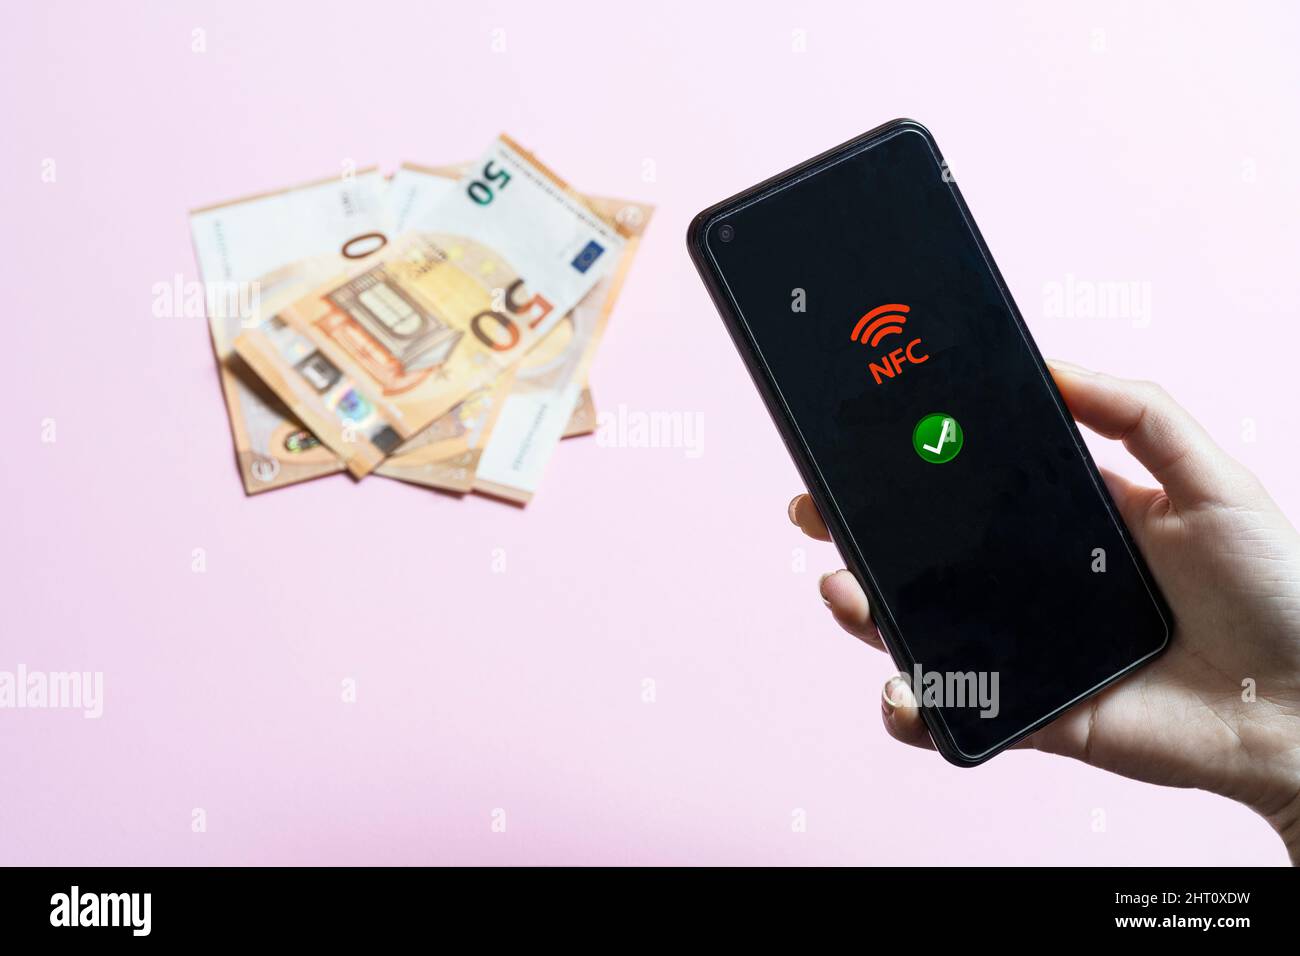 La jeune fille tient un téléphone portable dans sa main avec l'icône NFC à l'écran et avec quelques billets en euros en arrière-plan Banque D'Images